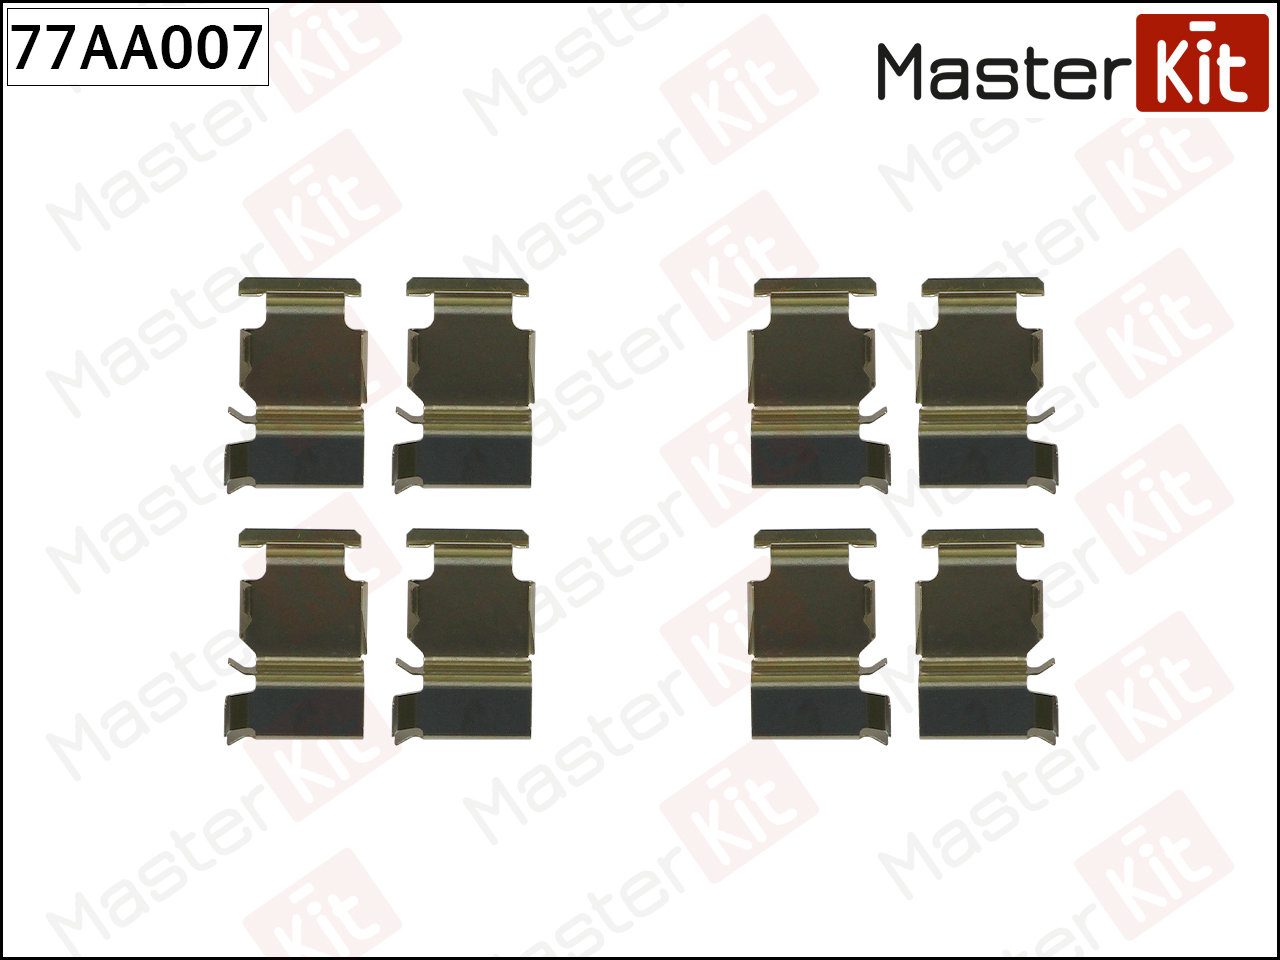 Ремкомплект крепления тормозных колодок - Master KiT 77AA007